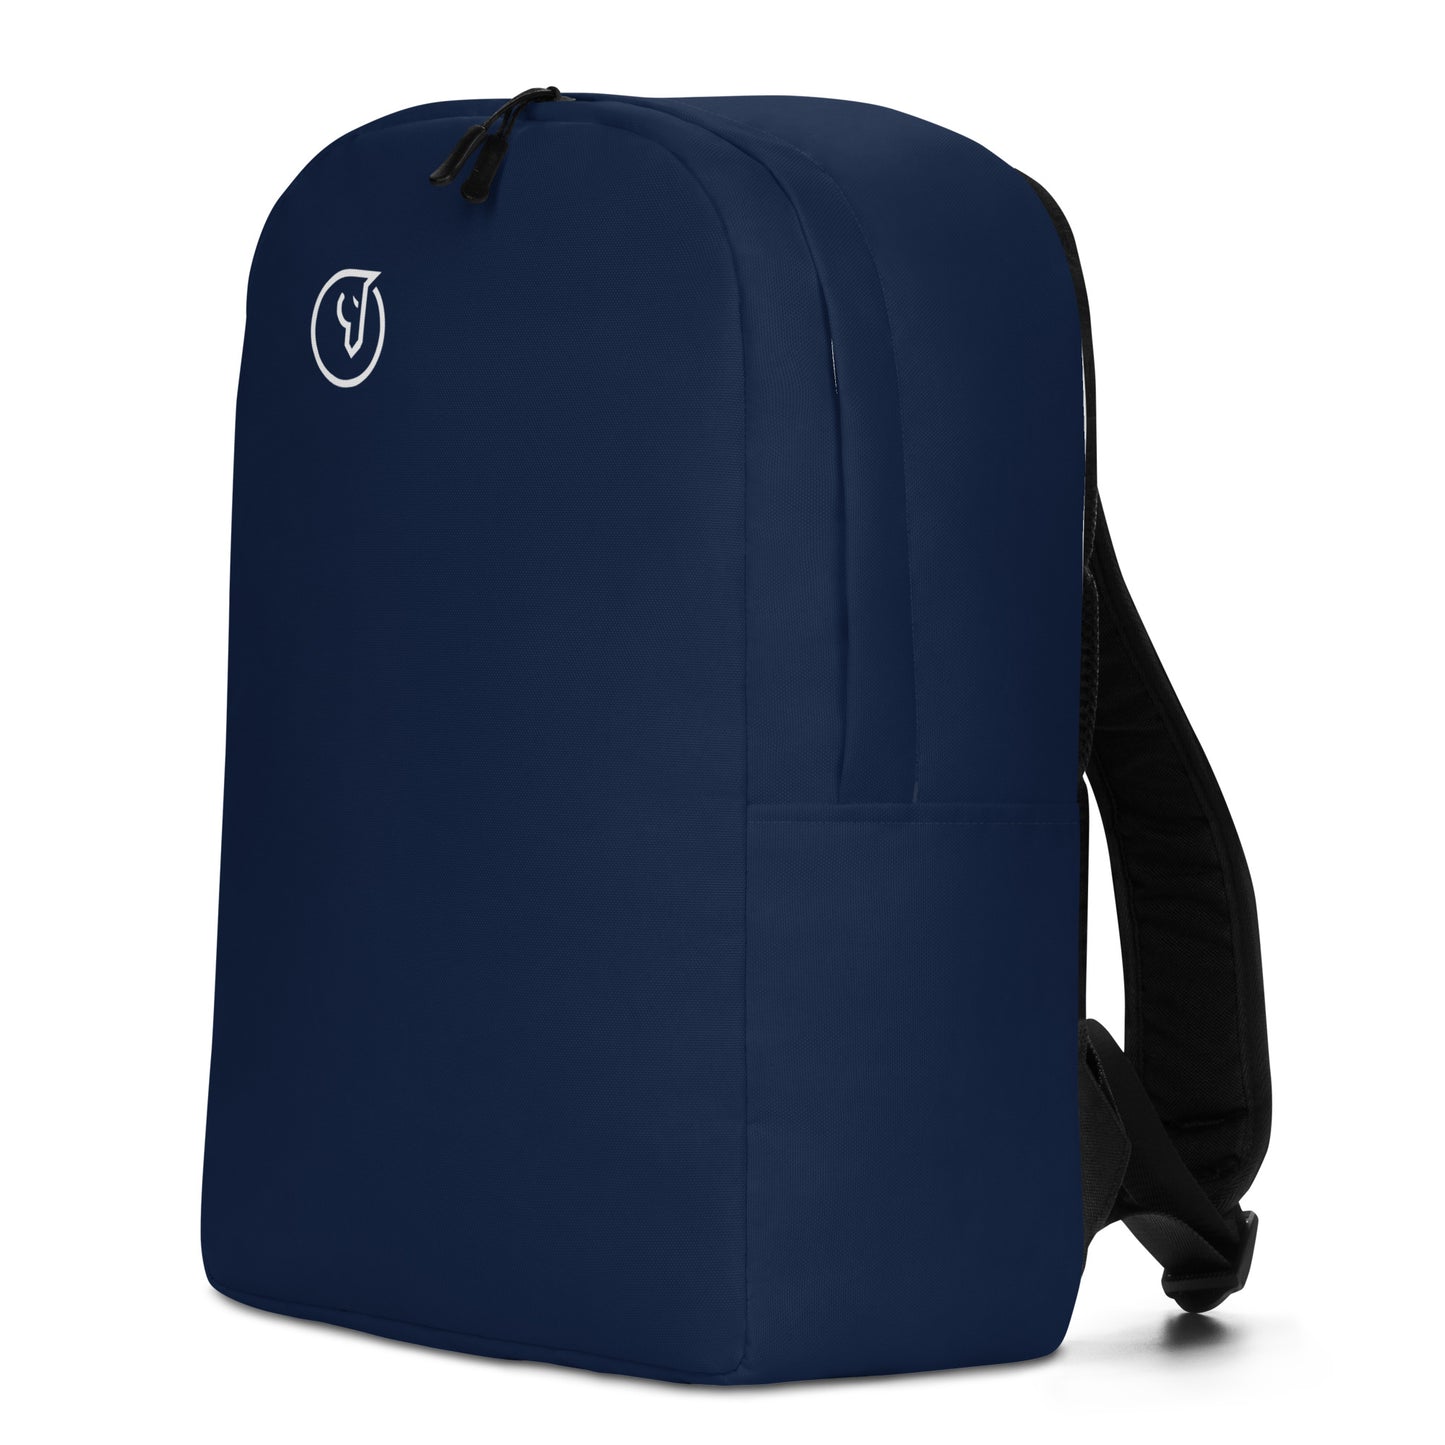 Humble Sportswear, unisex travel backpack waterproof, navy backpack